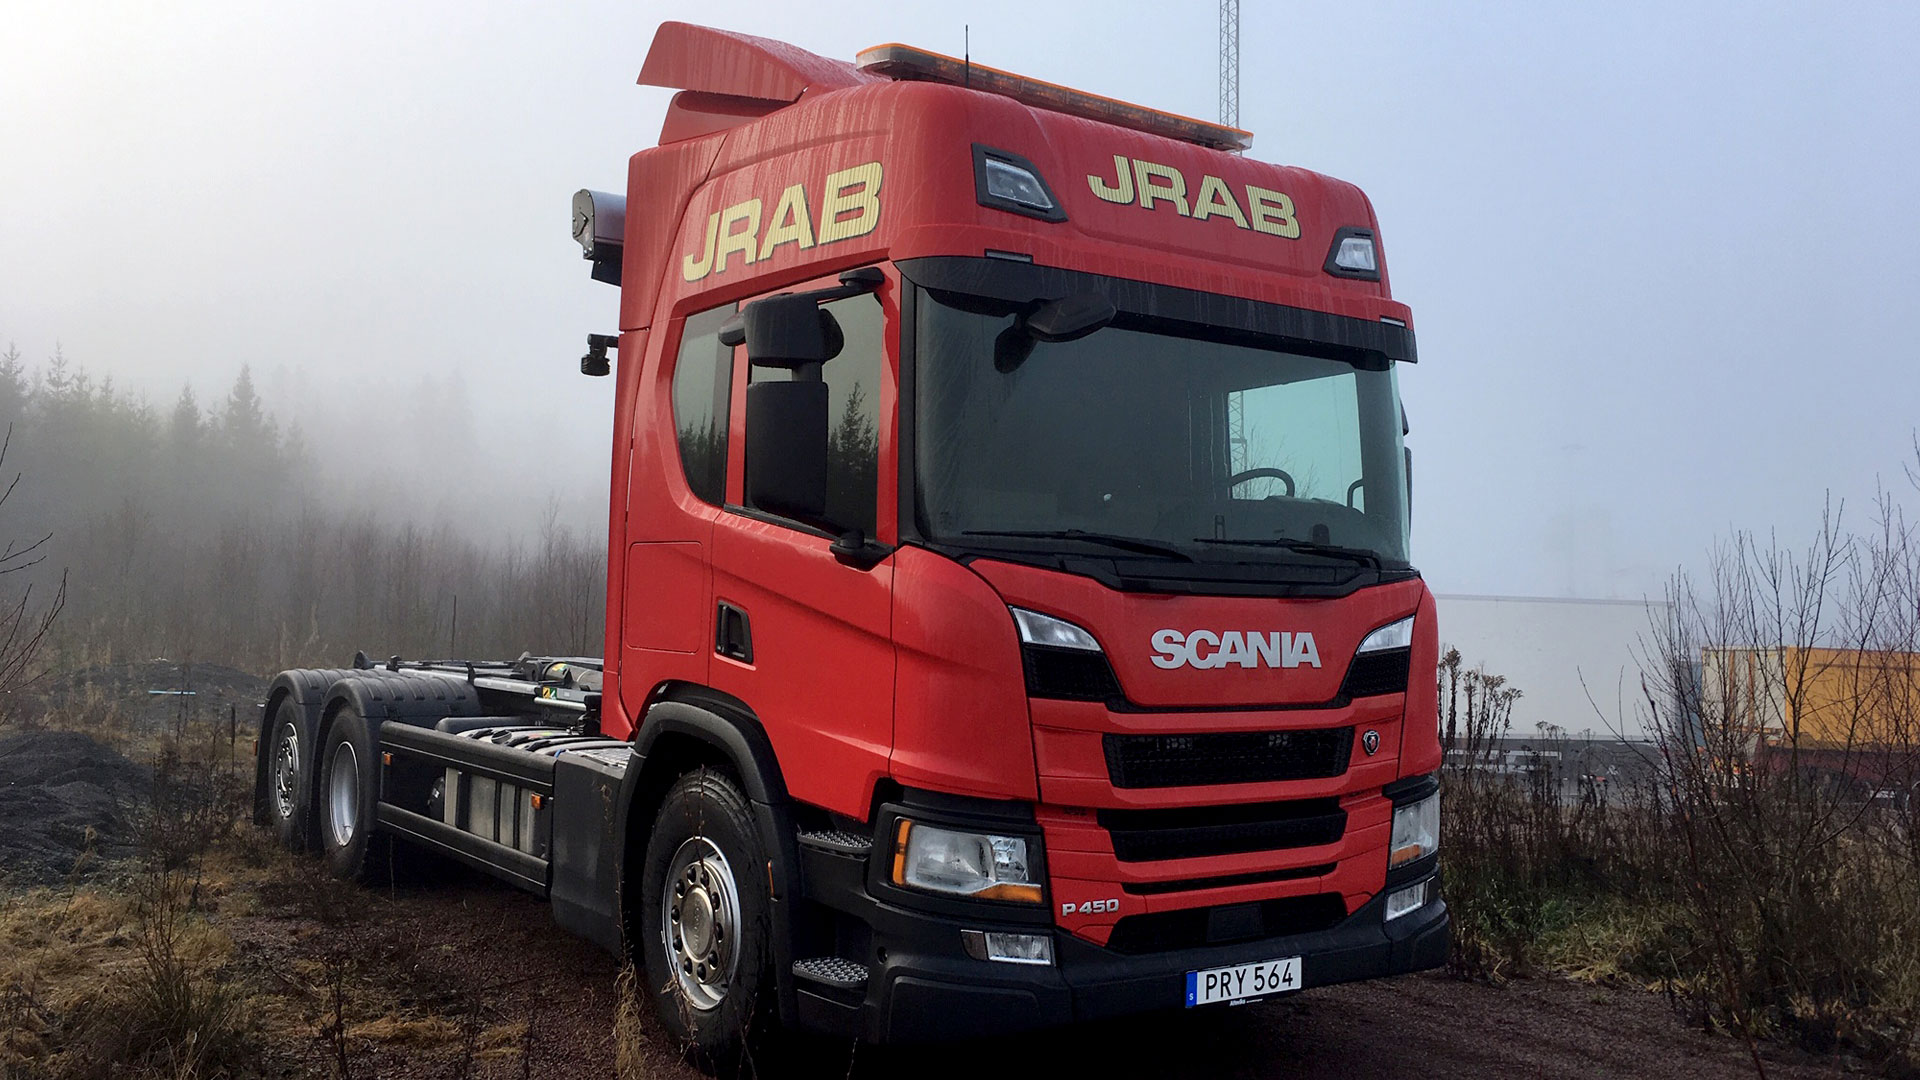 Scania nyleverans till JRAB.